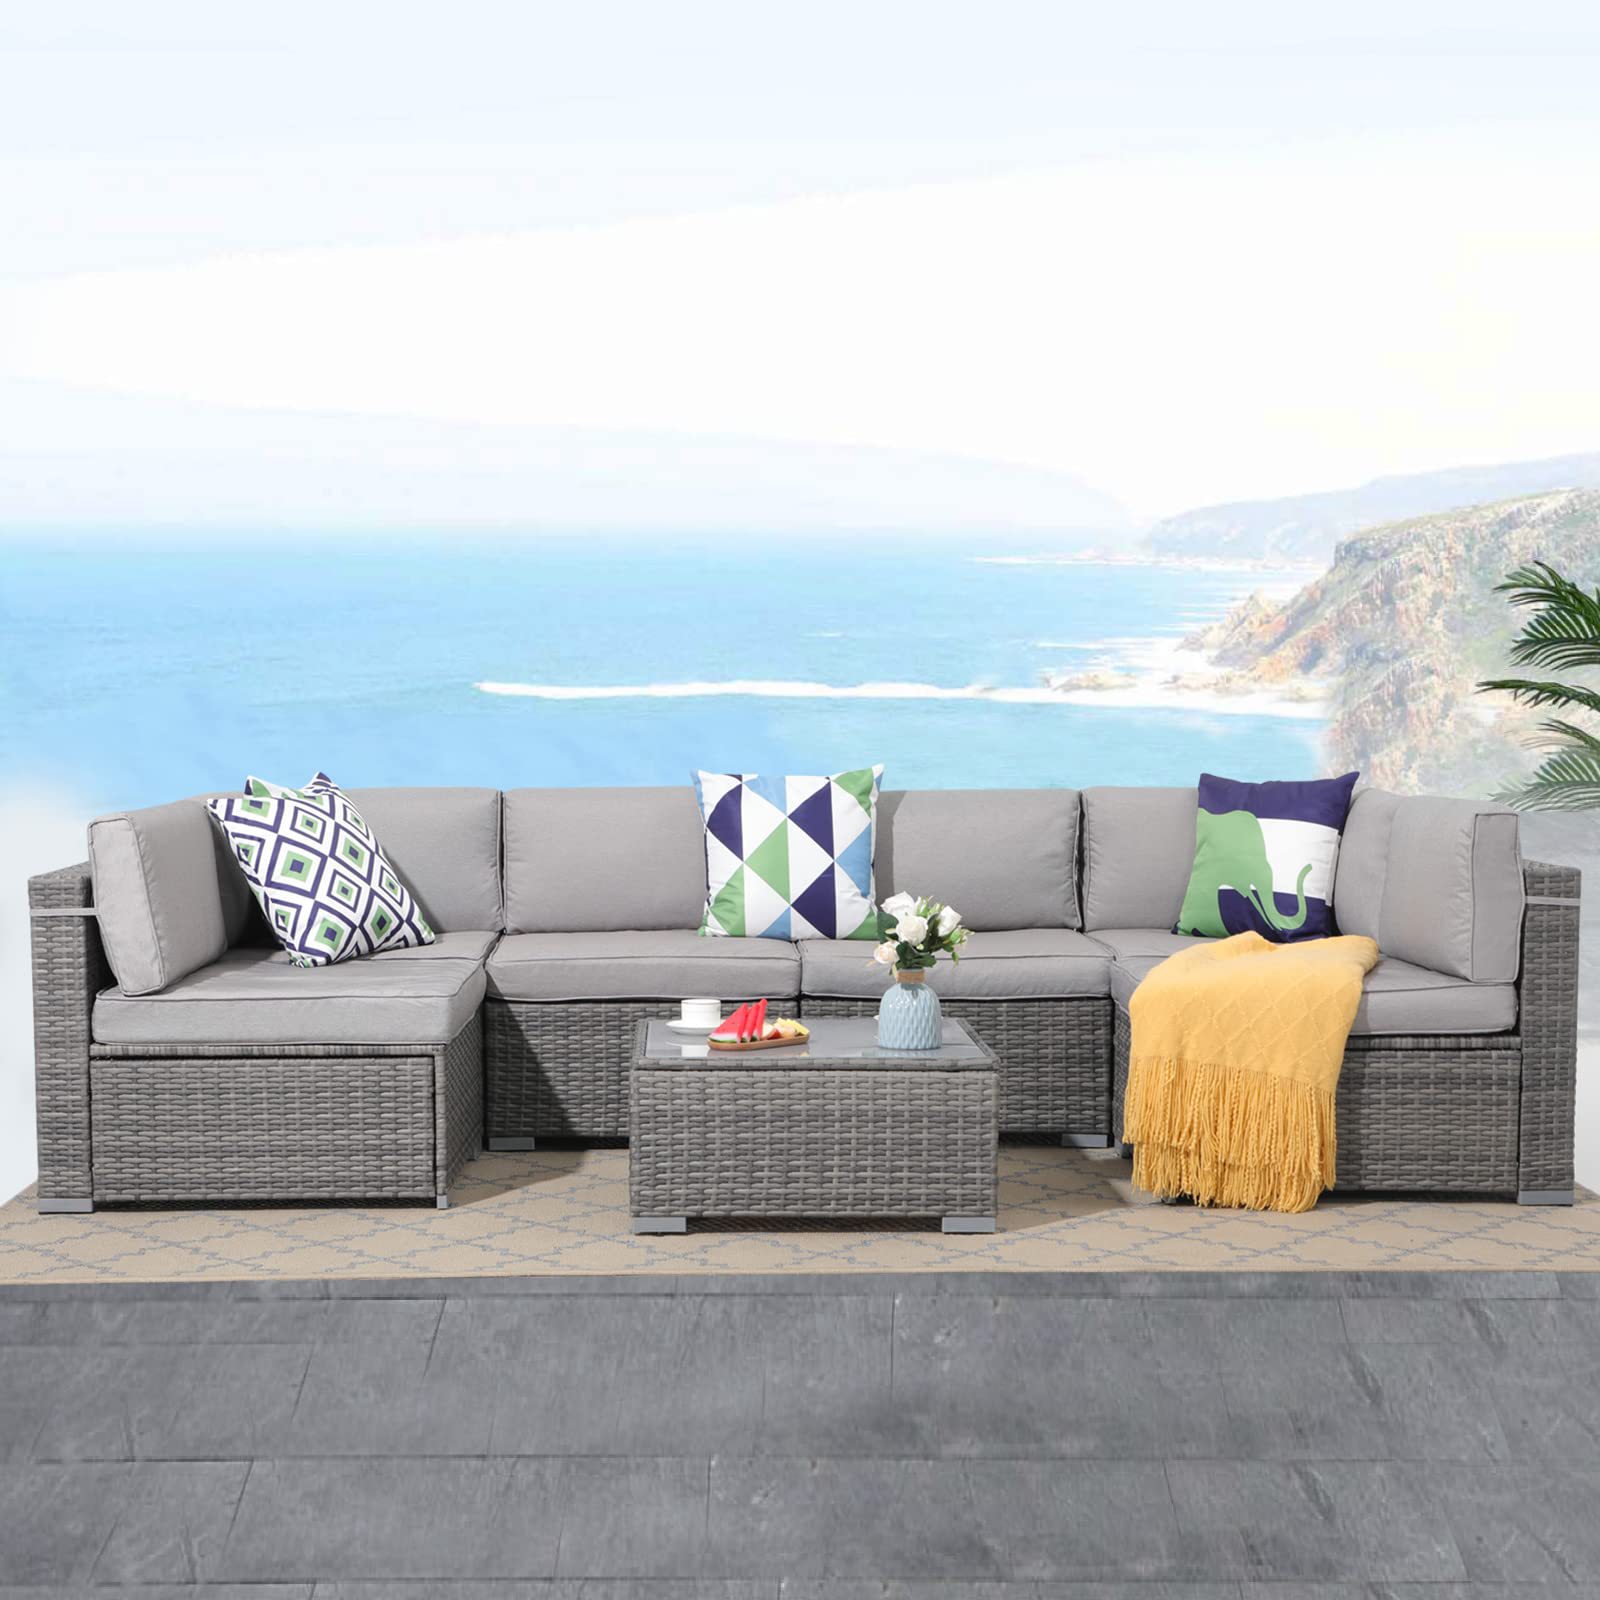 Outdoor Garden Lounge Free Combination Balconcy Contemporary Patio Furniture Sofa Set